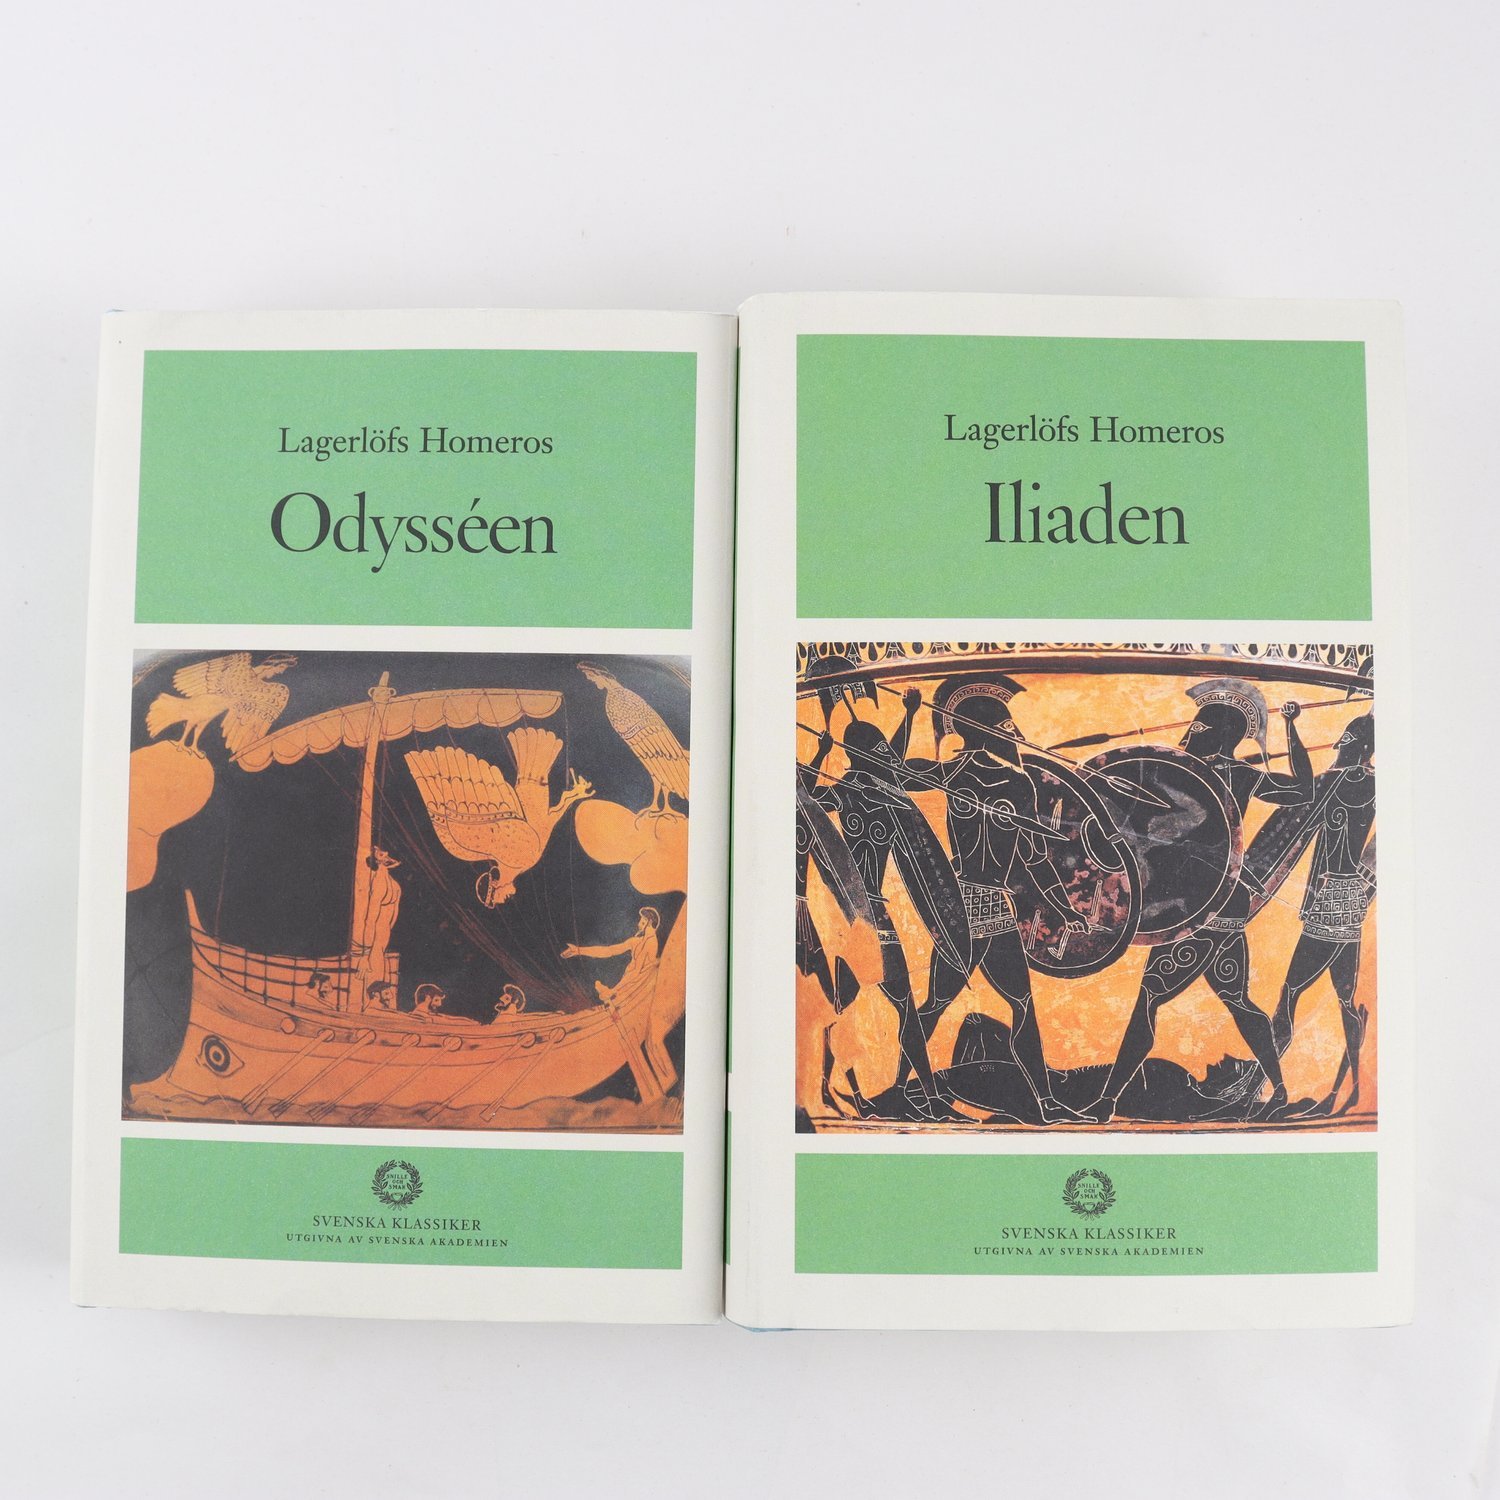 Homeros, Iliaden & Odysséen, 2 vol., översättning Erland Lagerlöf